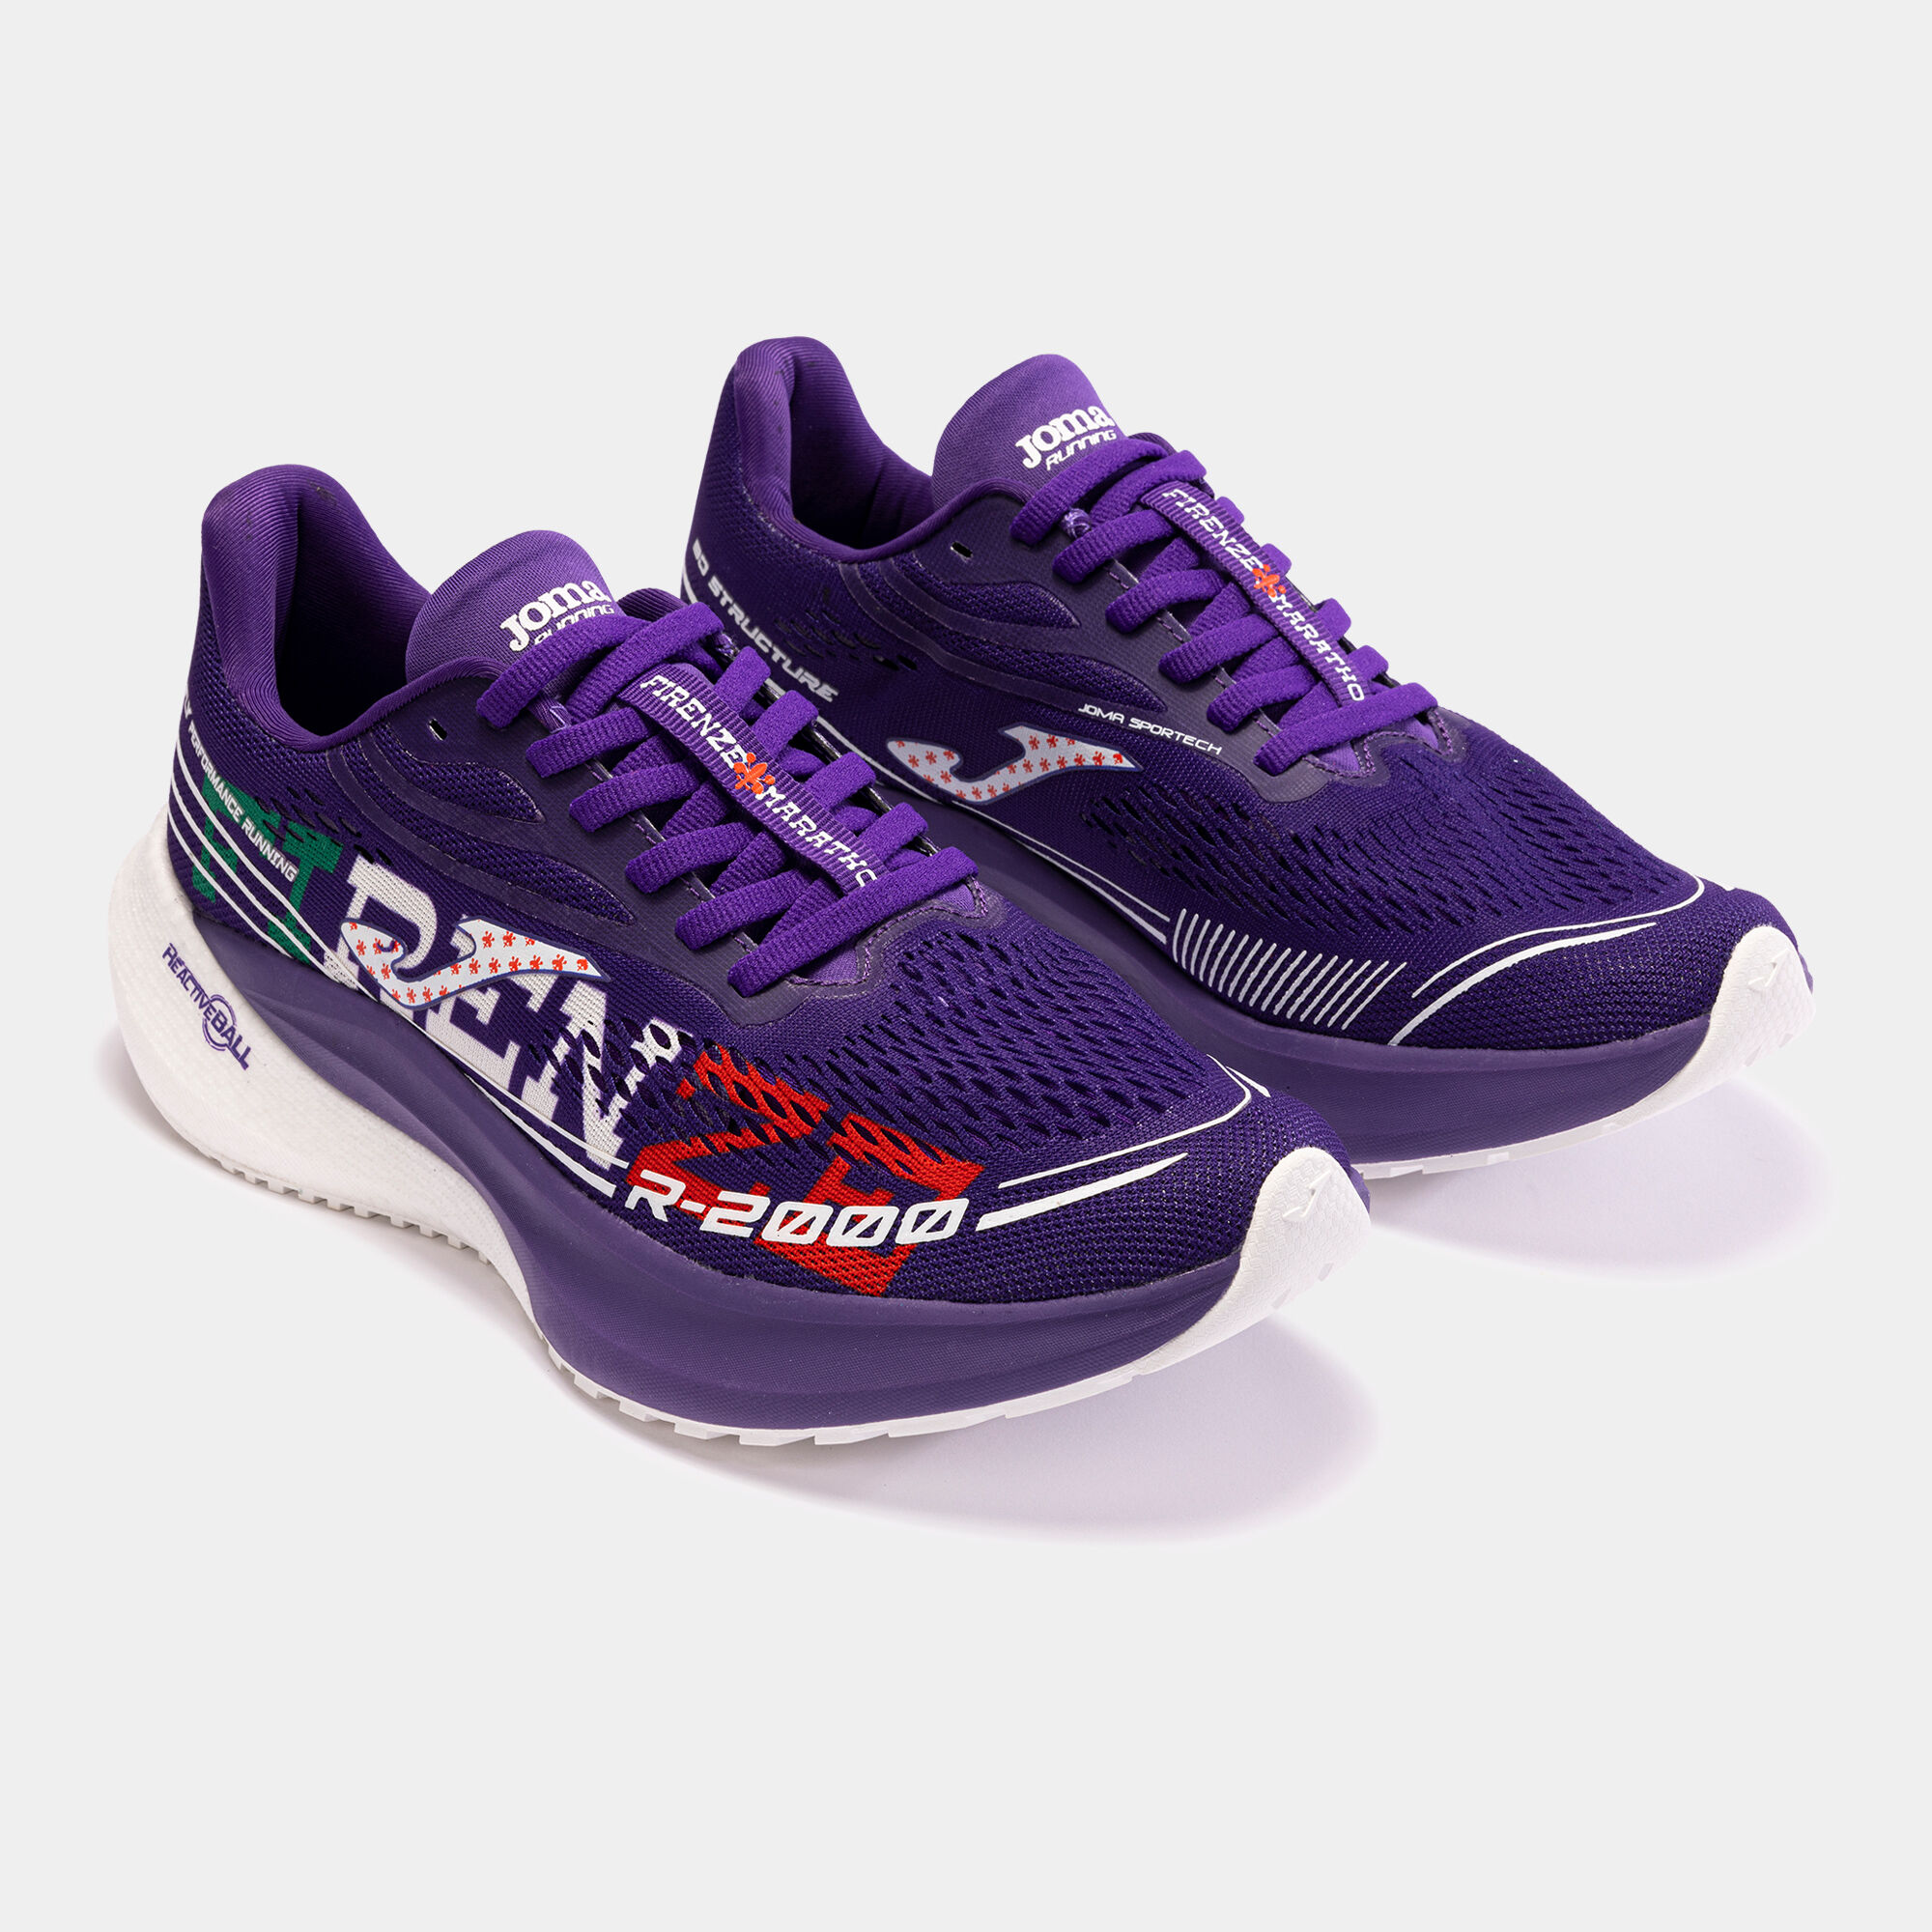 Chaussures running R.2000 23 Florence Marathon unisexe violet